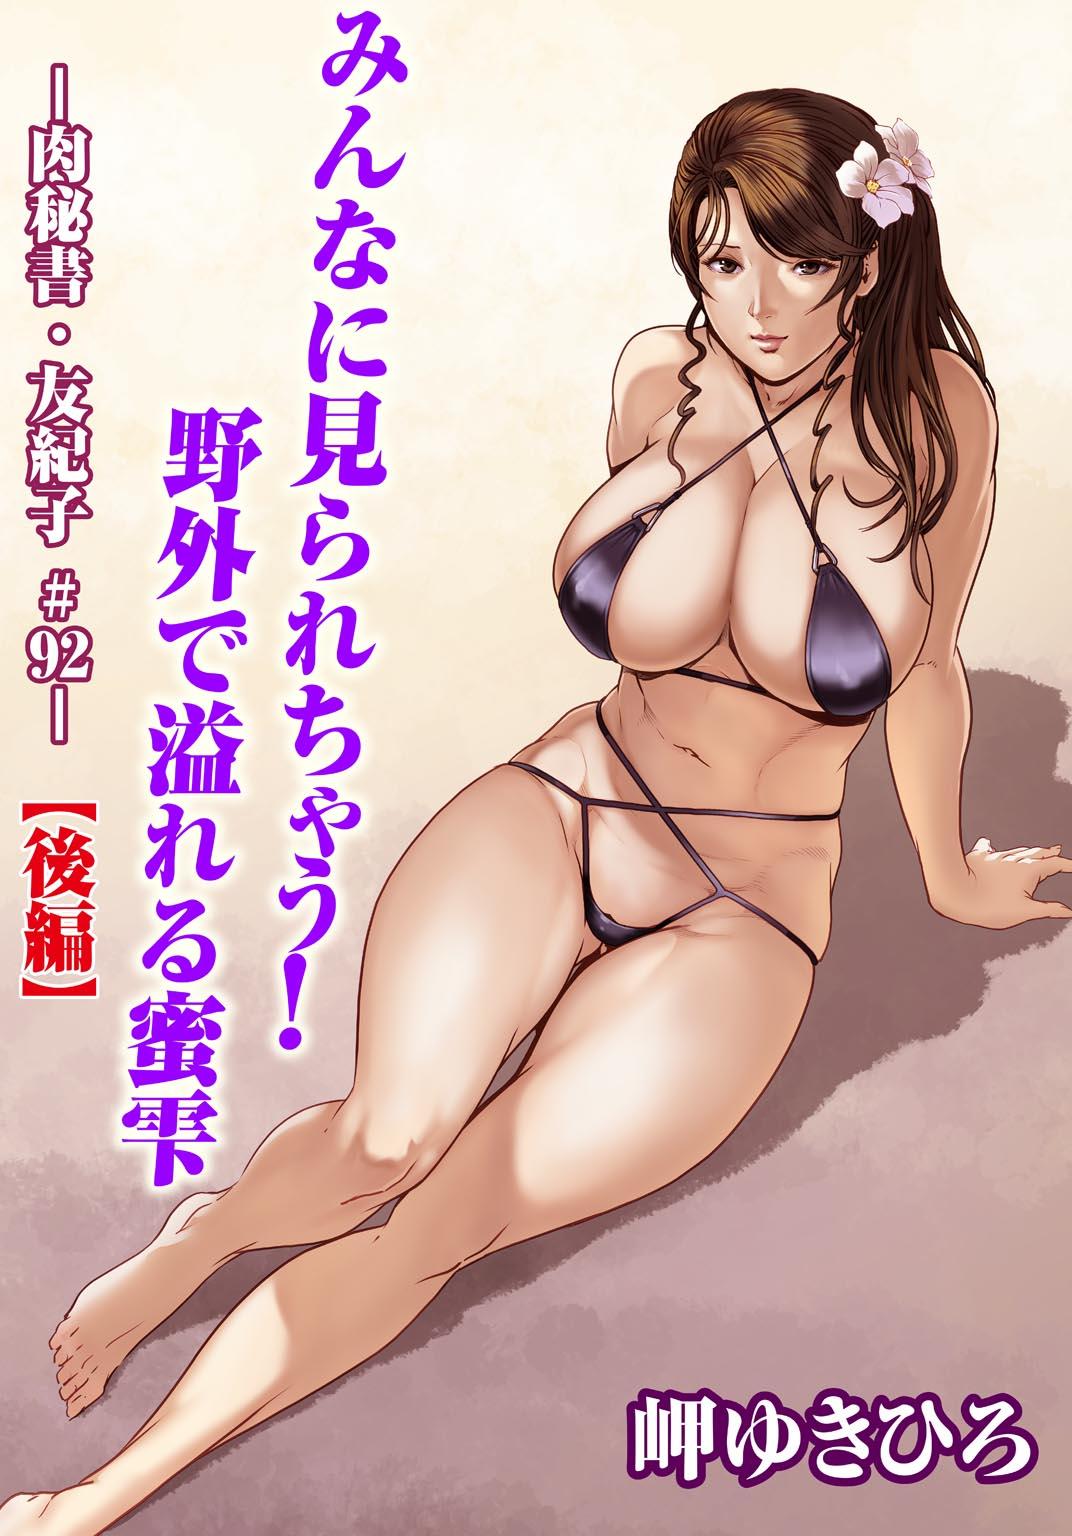 Nikuhisyo Yukiko 31 49